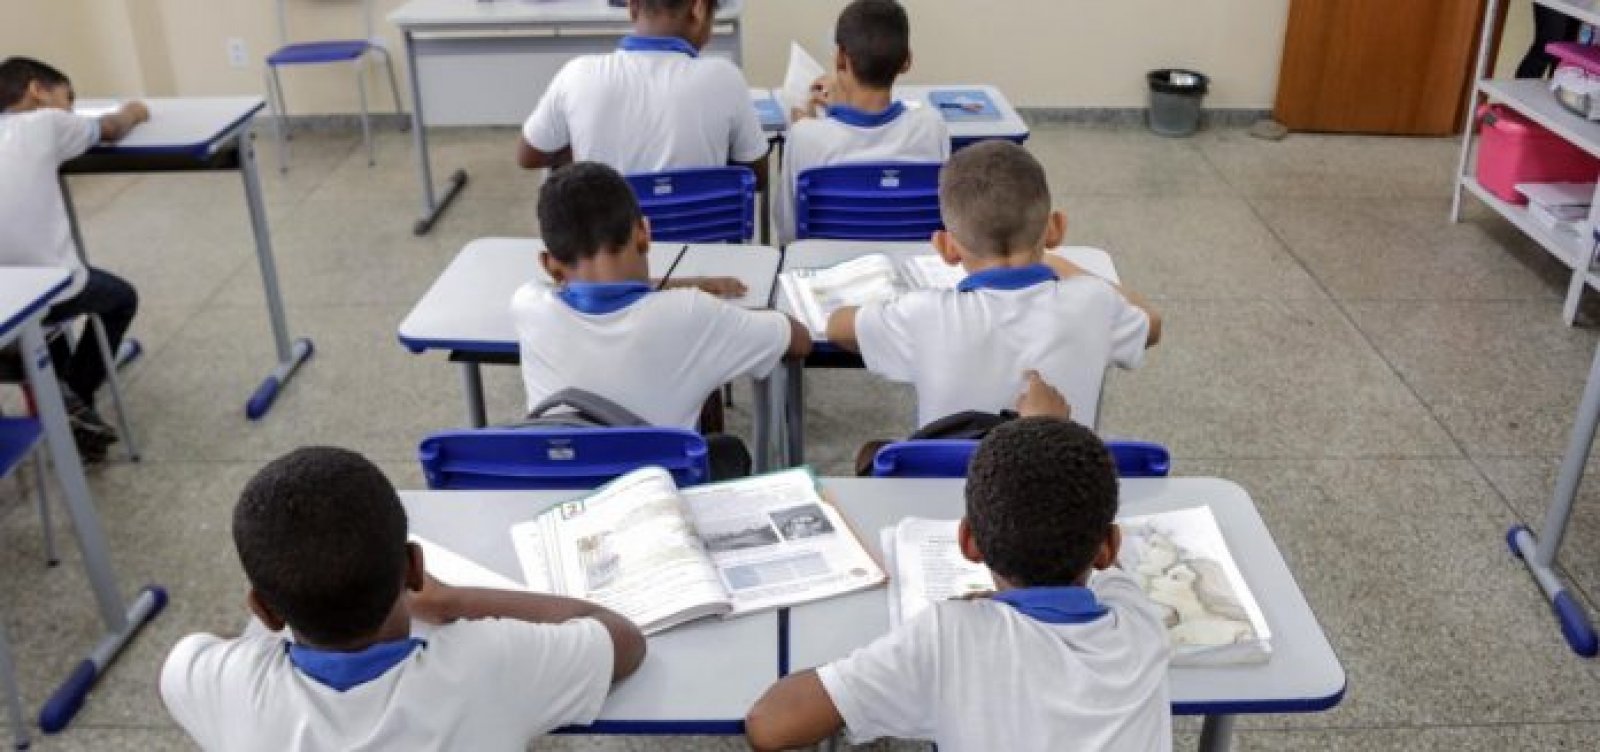 ACM Neto diz que ‘talvez faça sentido não voltar educação infantil em 2020’